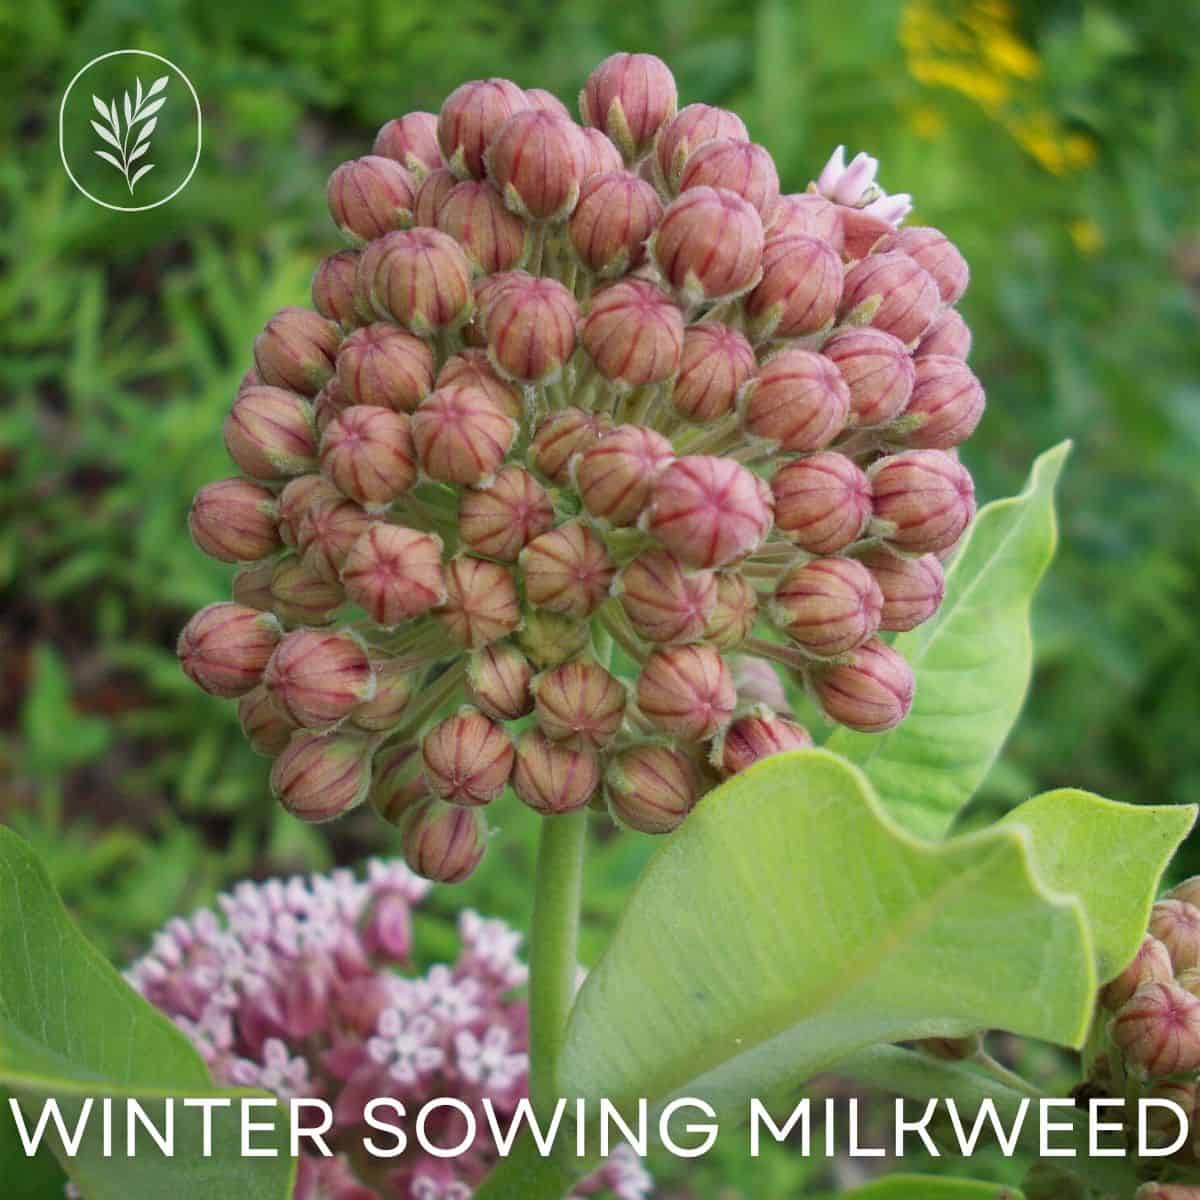 Winter sowing milkweed via @home4theharvest